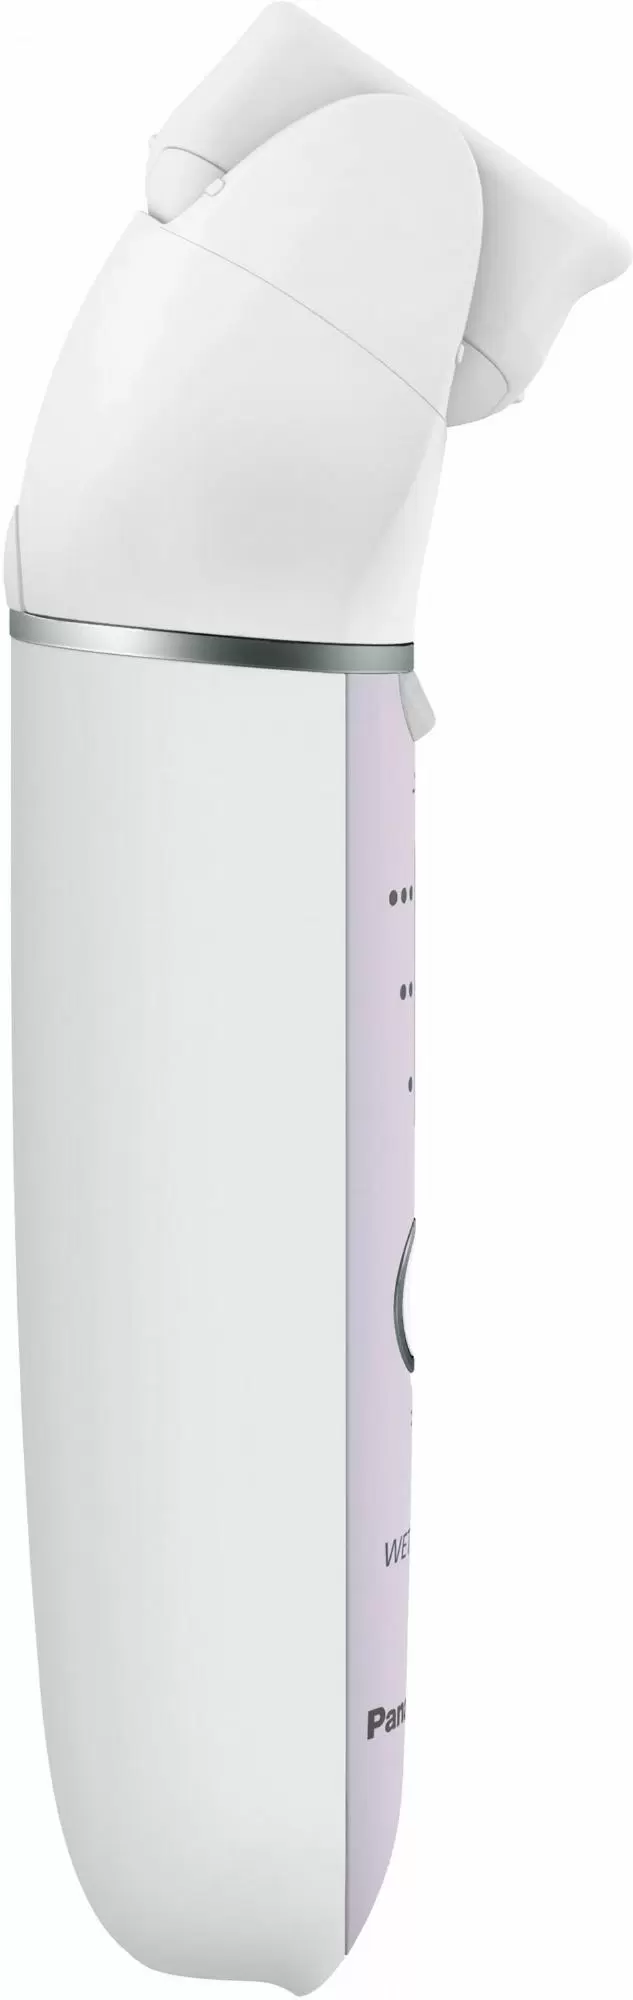 Эпилятор Panasonic ES-EY80-P520, белый